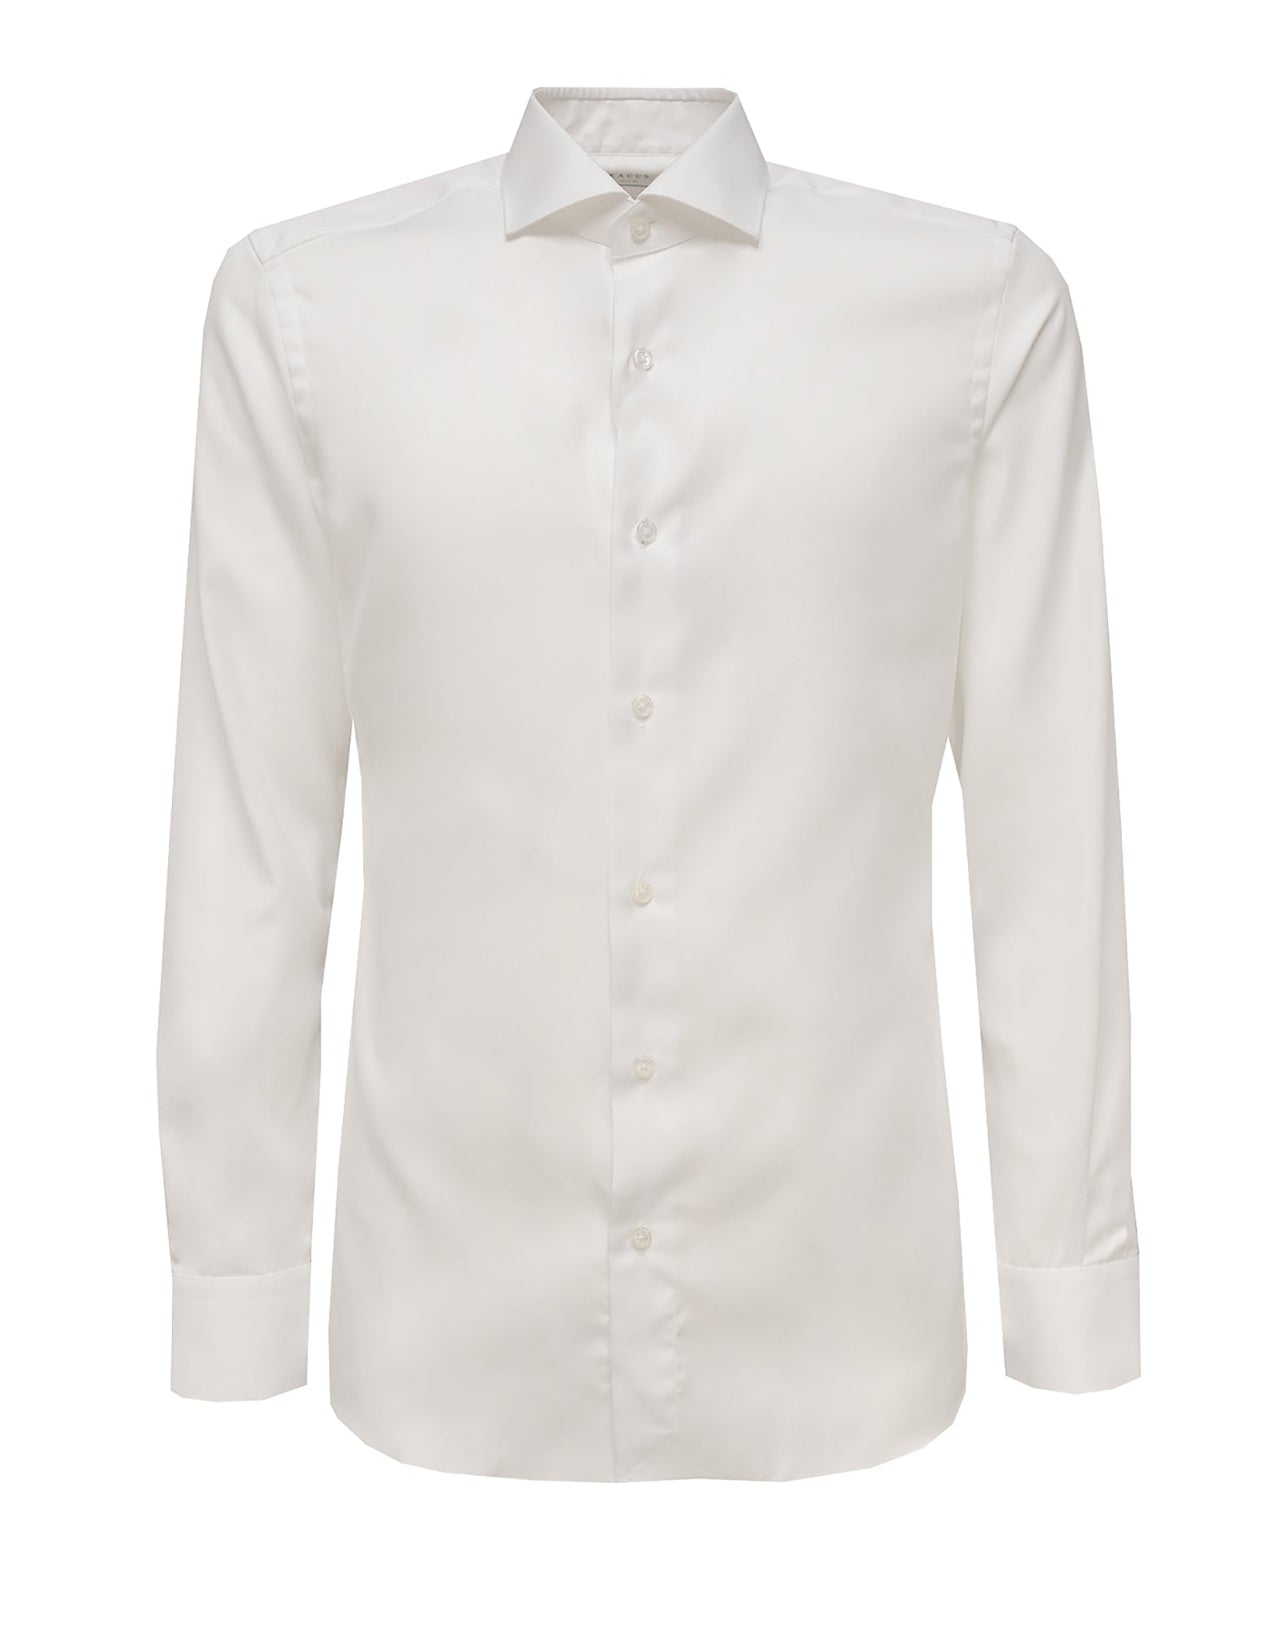 Xacus white shirt no ironing in popeline